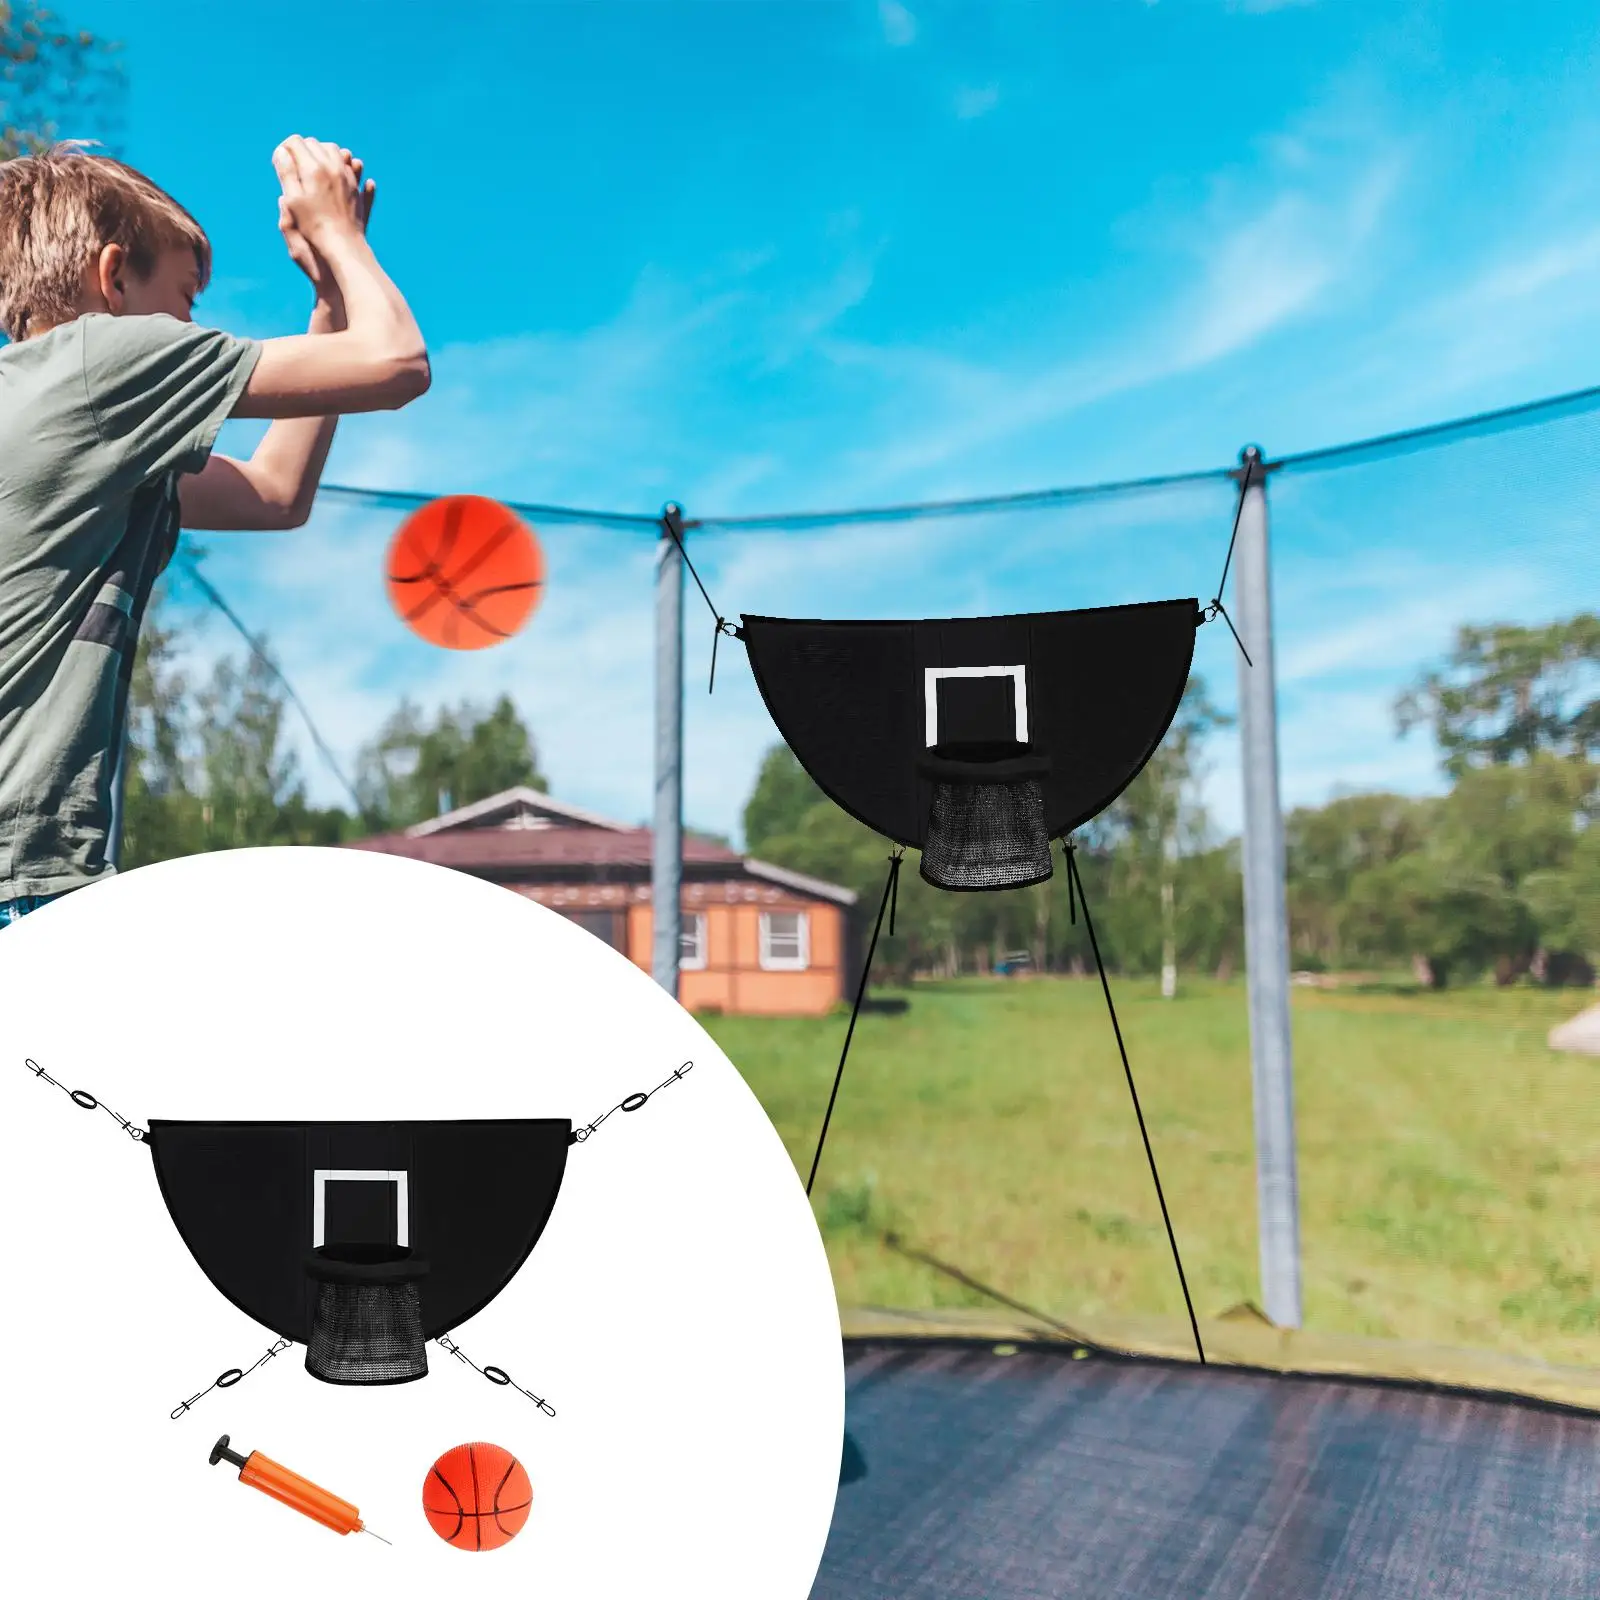 Mini Basketball Hoop for Trampoline Kids Easy Install Basketball Goal Game